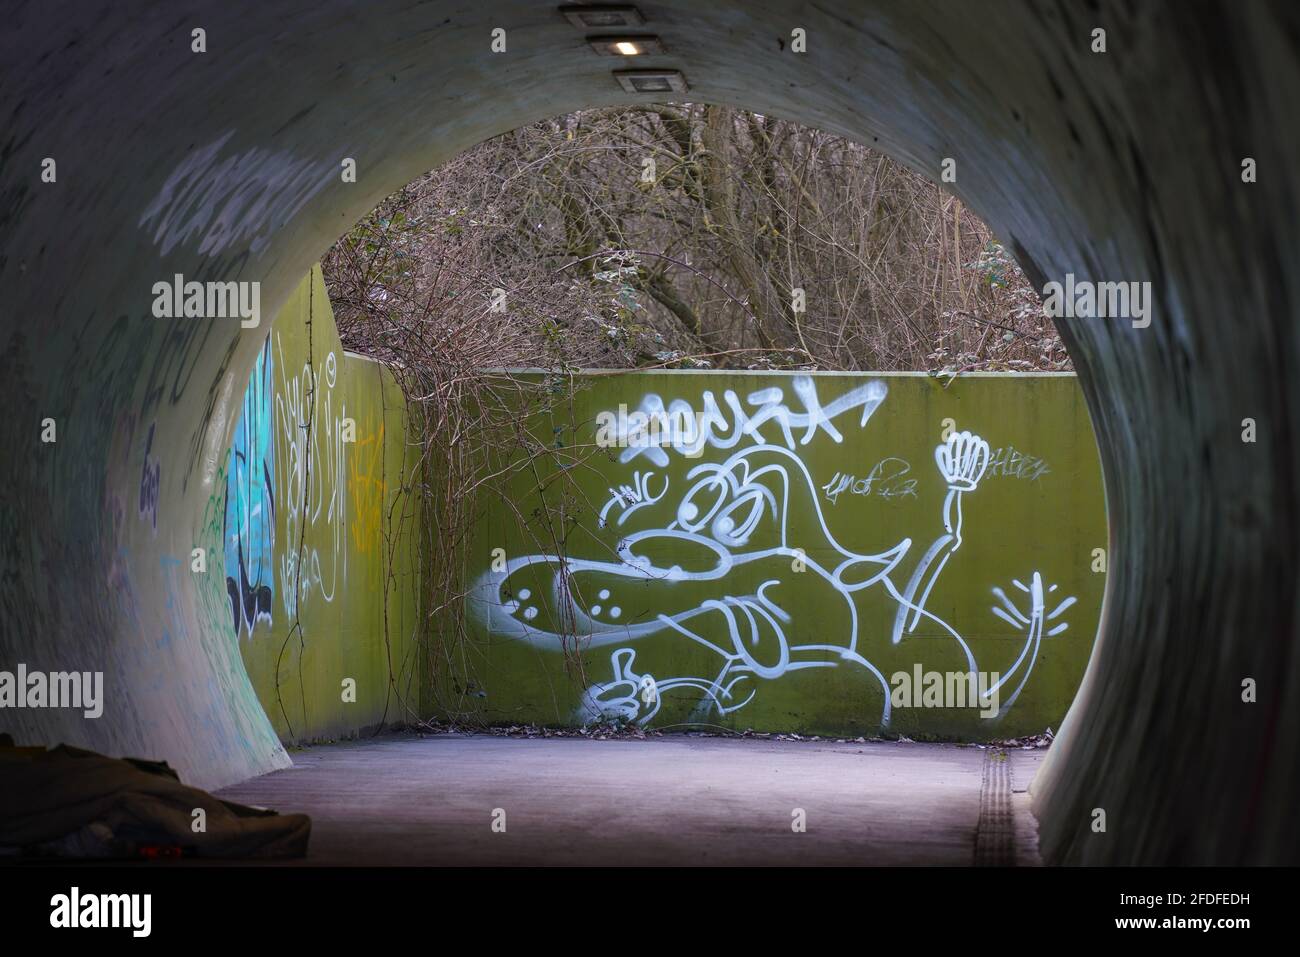 Métro, sous-pass, projecteurs, effrayant, nuit, voyageur seul, coupe courte, tunnel rond, lien vers le sol, béton, graffiti, art mural, Banksy, tag. Banque D'Images